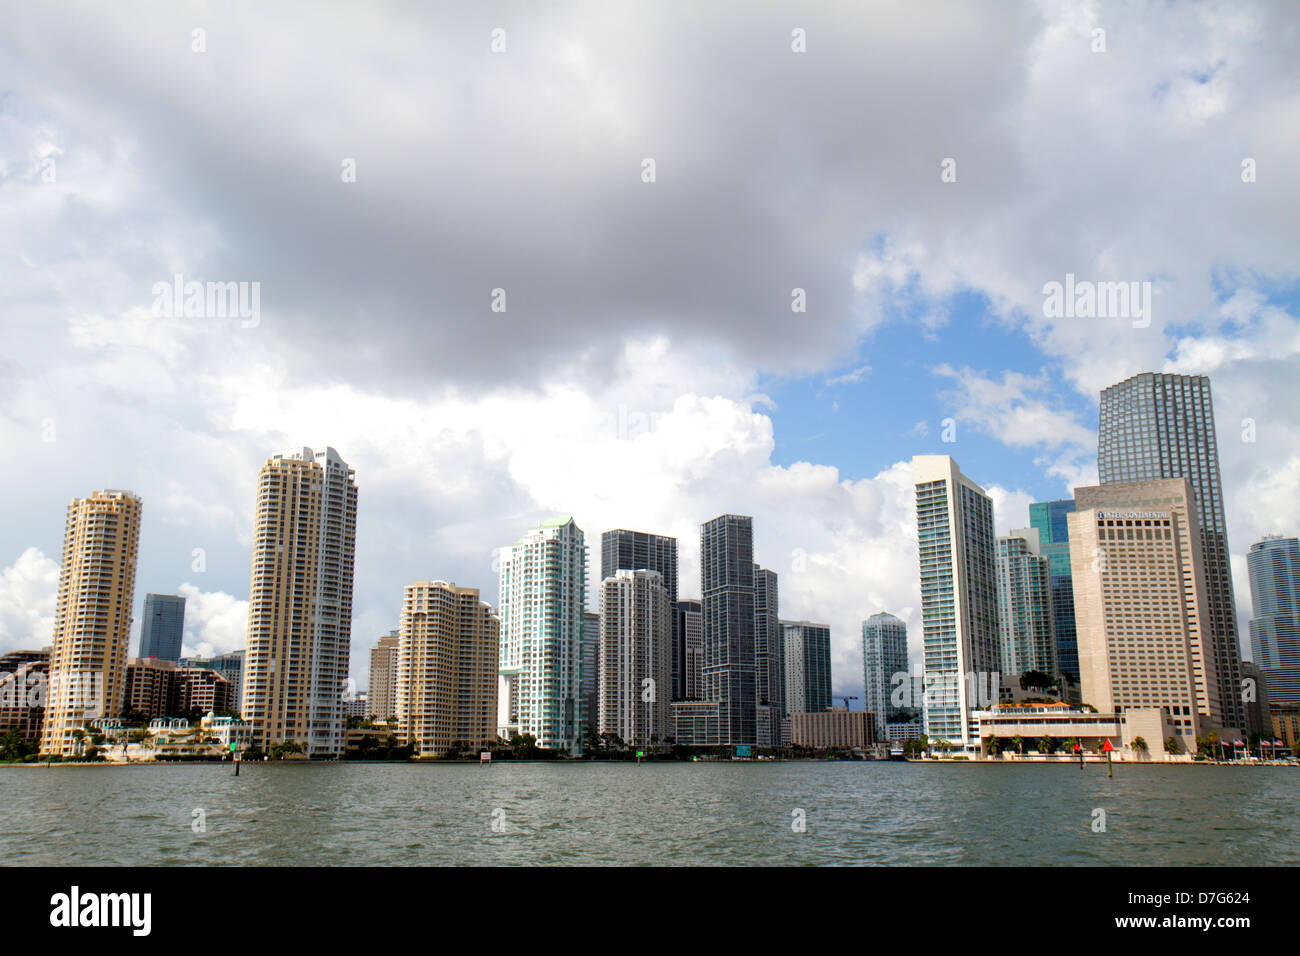 Miami Floride, ville ville horizon, quartier financier Brickell, Biscayne Bay ciel d'eau, nuages, immeubles de bureaux, ville horizon paysage urbain, gratte-ciel Banque D'Images